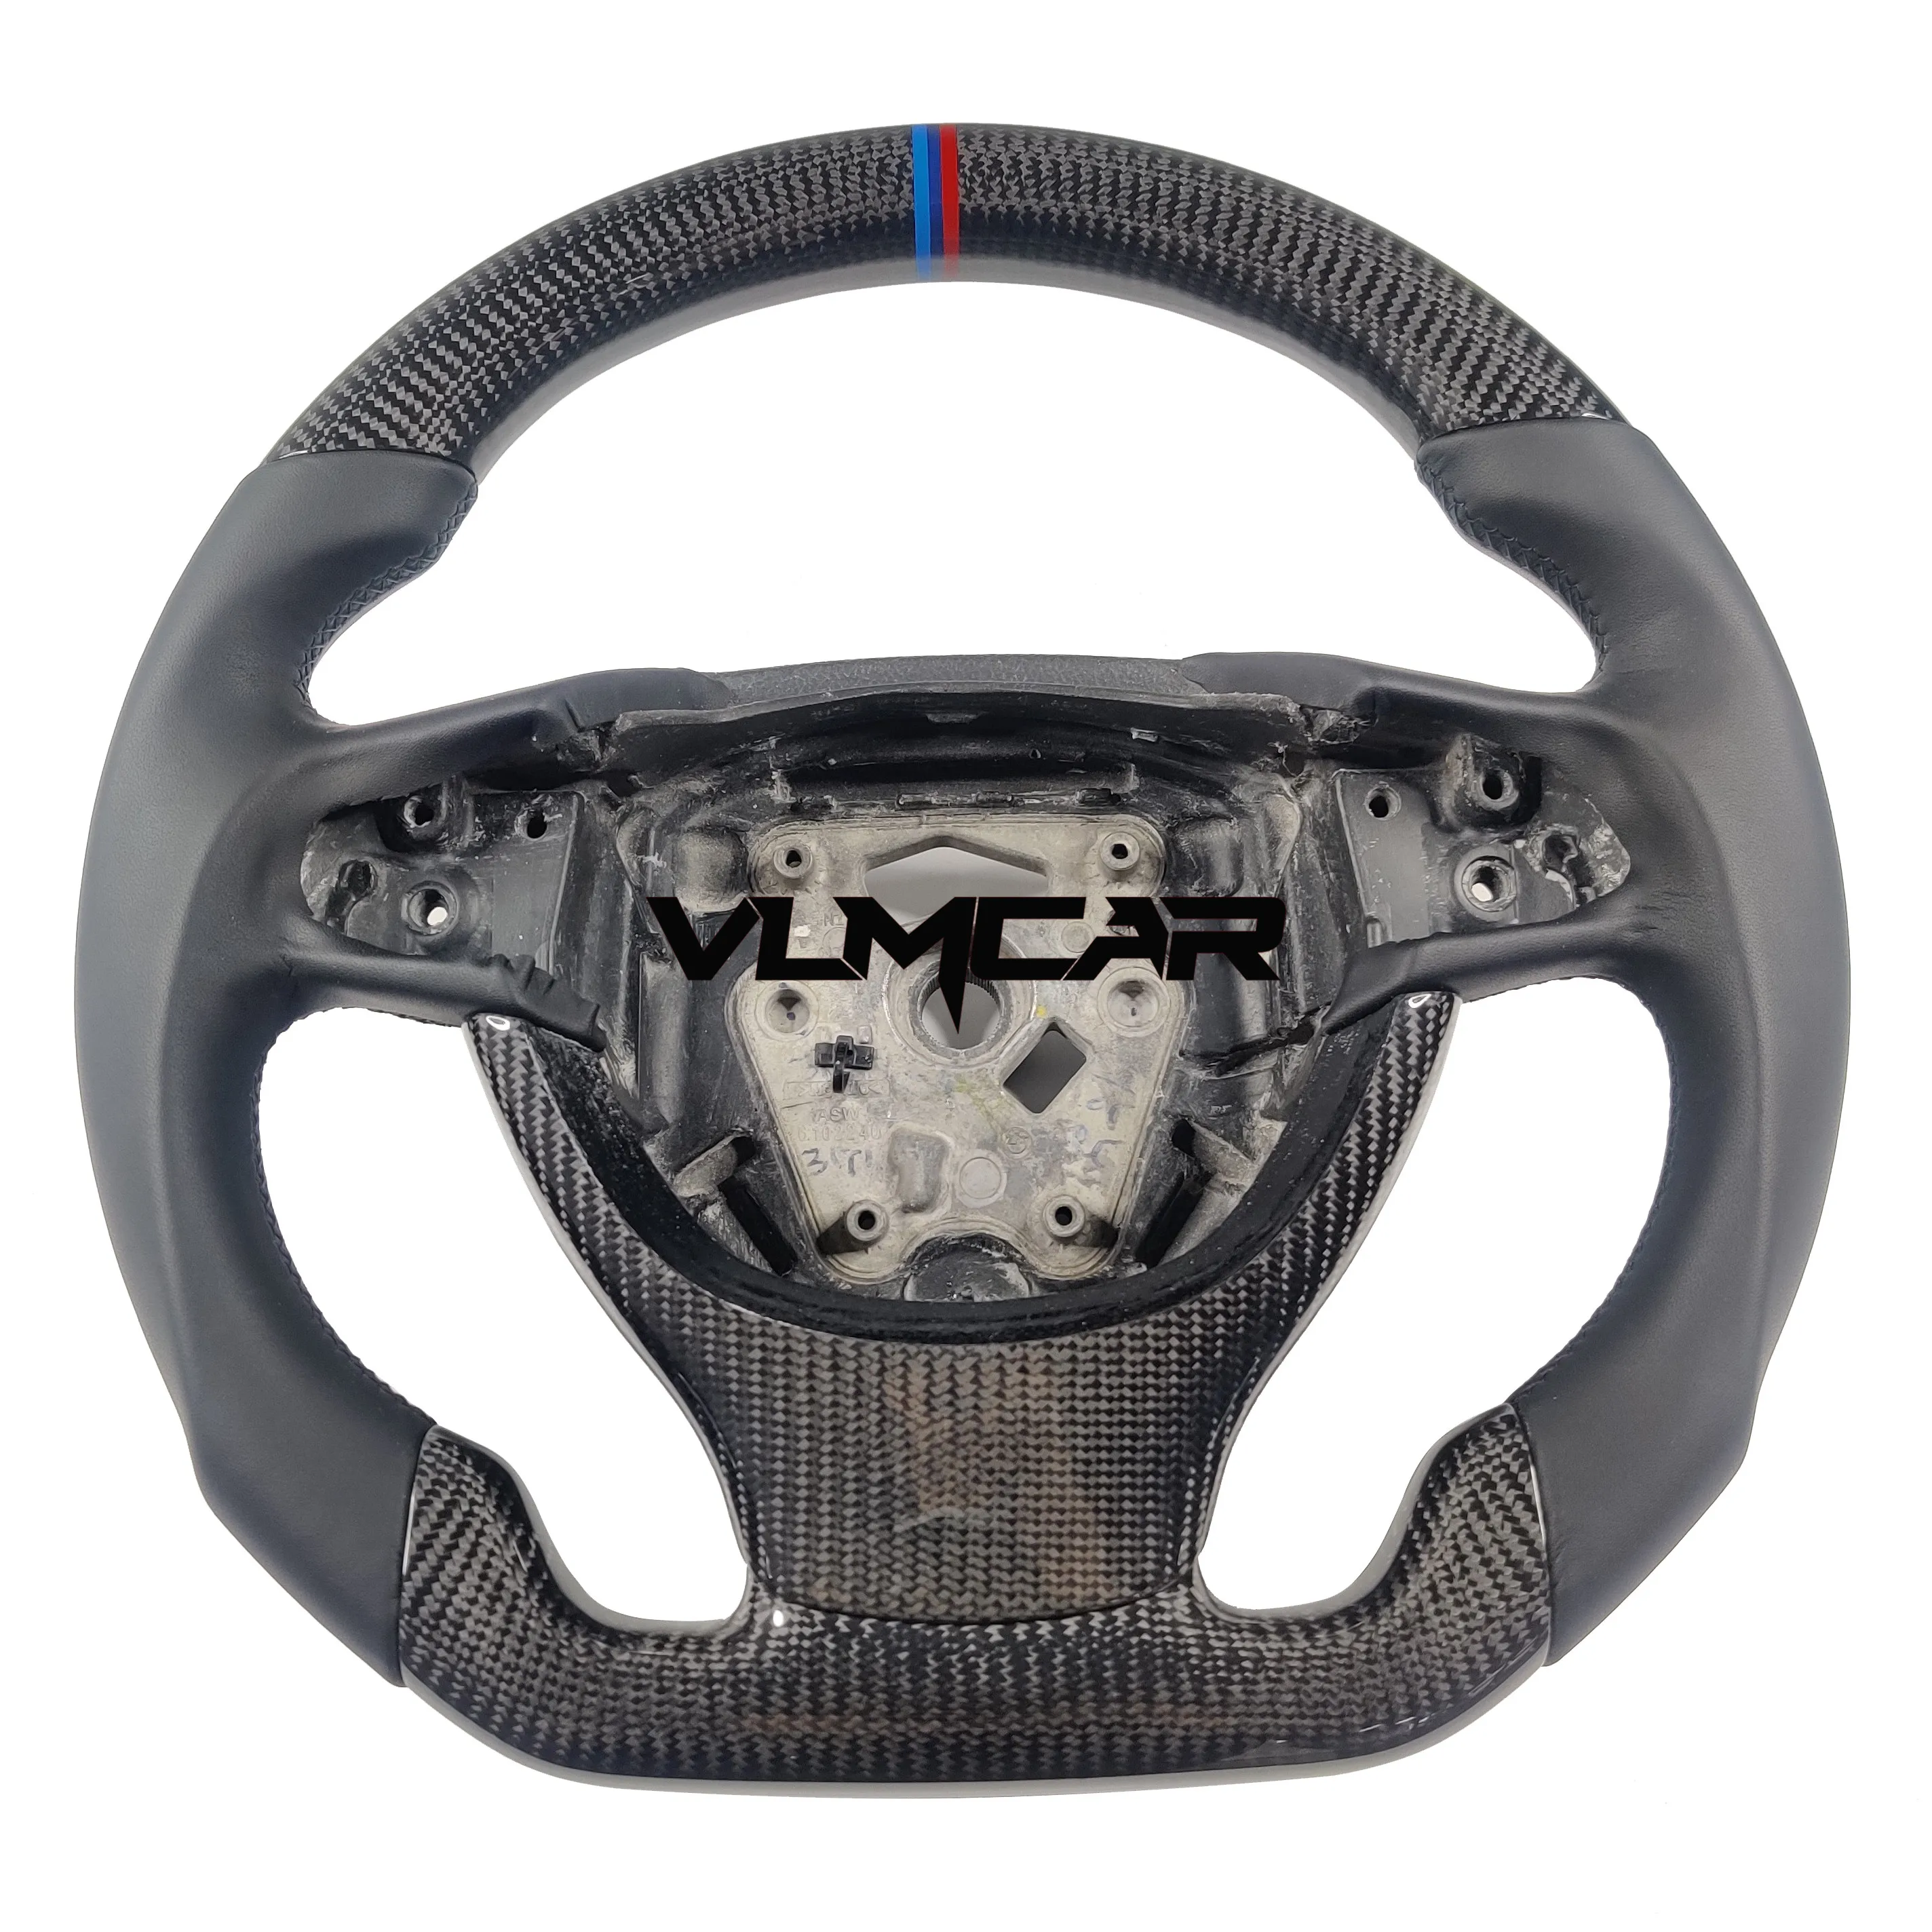 

Рулевое колесо из углеродного волокна для BMW 5 серии F10/могут быть изготовлены по индивидуальному заказу для всех моделей BMW